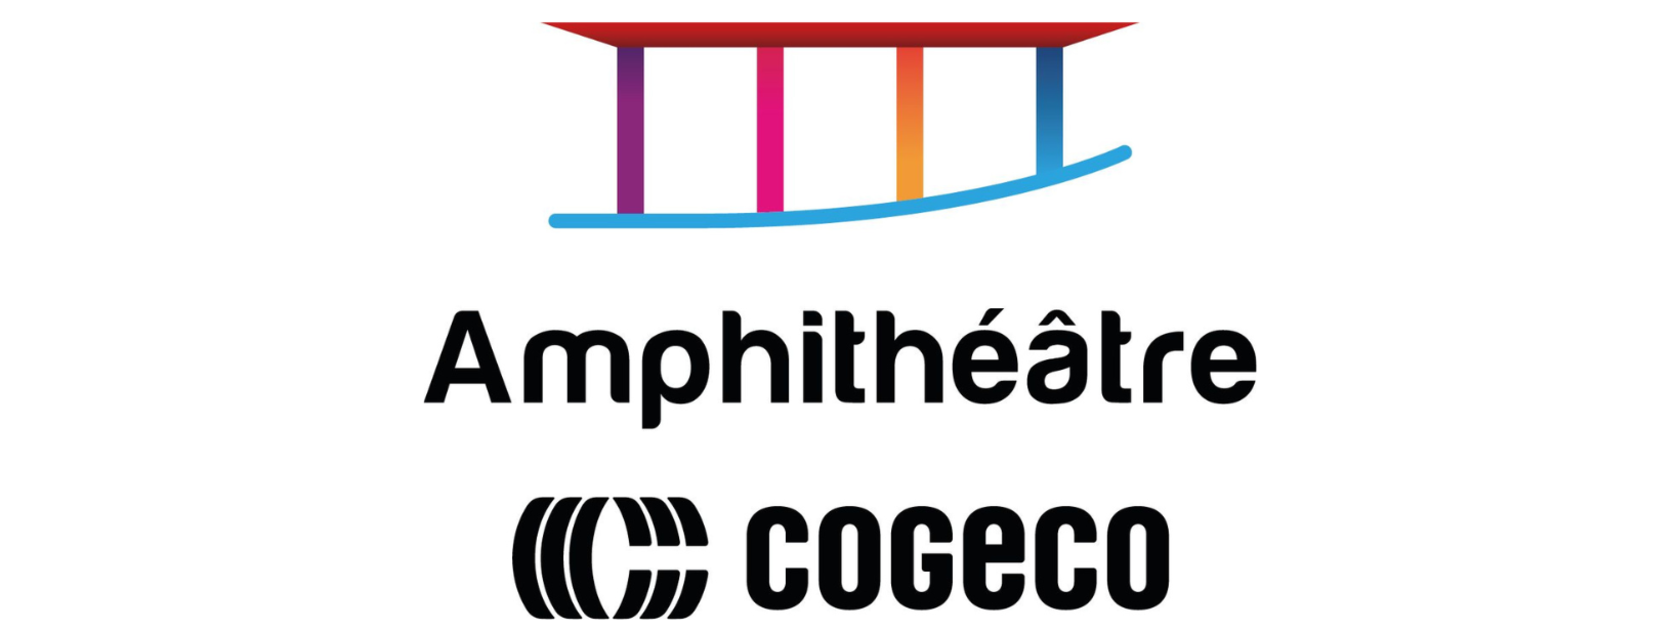 The Cogeco Amphitheatre unveils its new logo